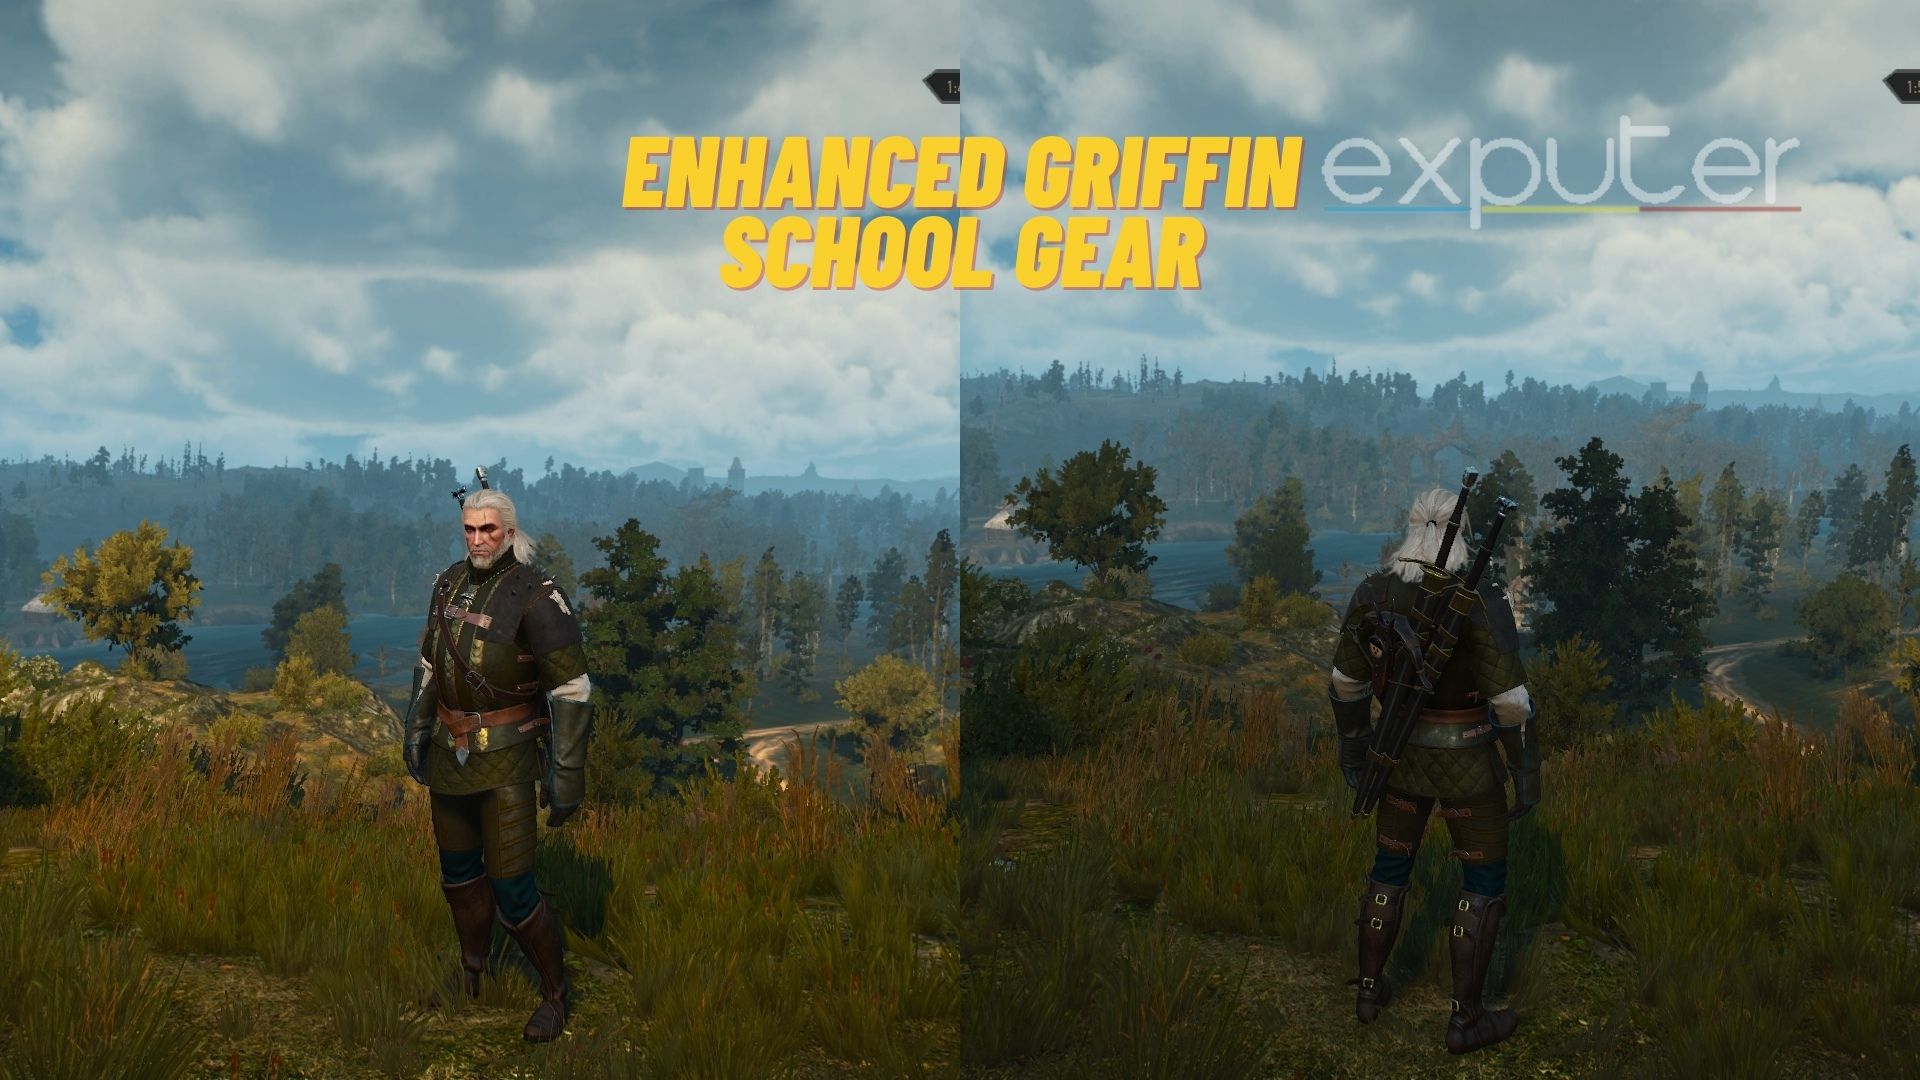 Witcher 3 Enhanced Griffin School Gear